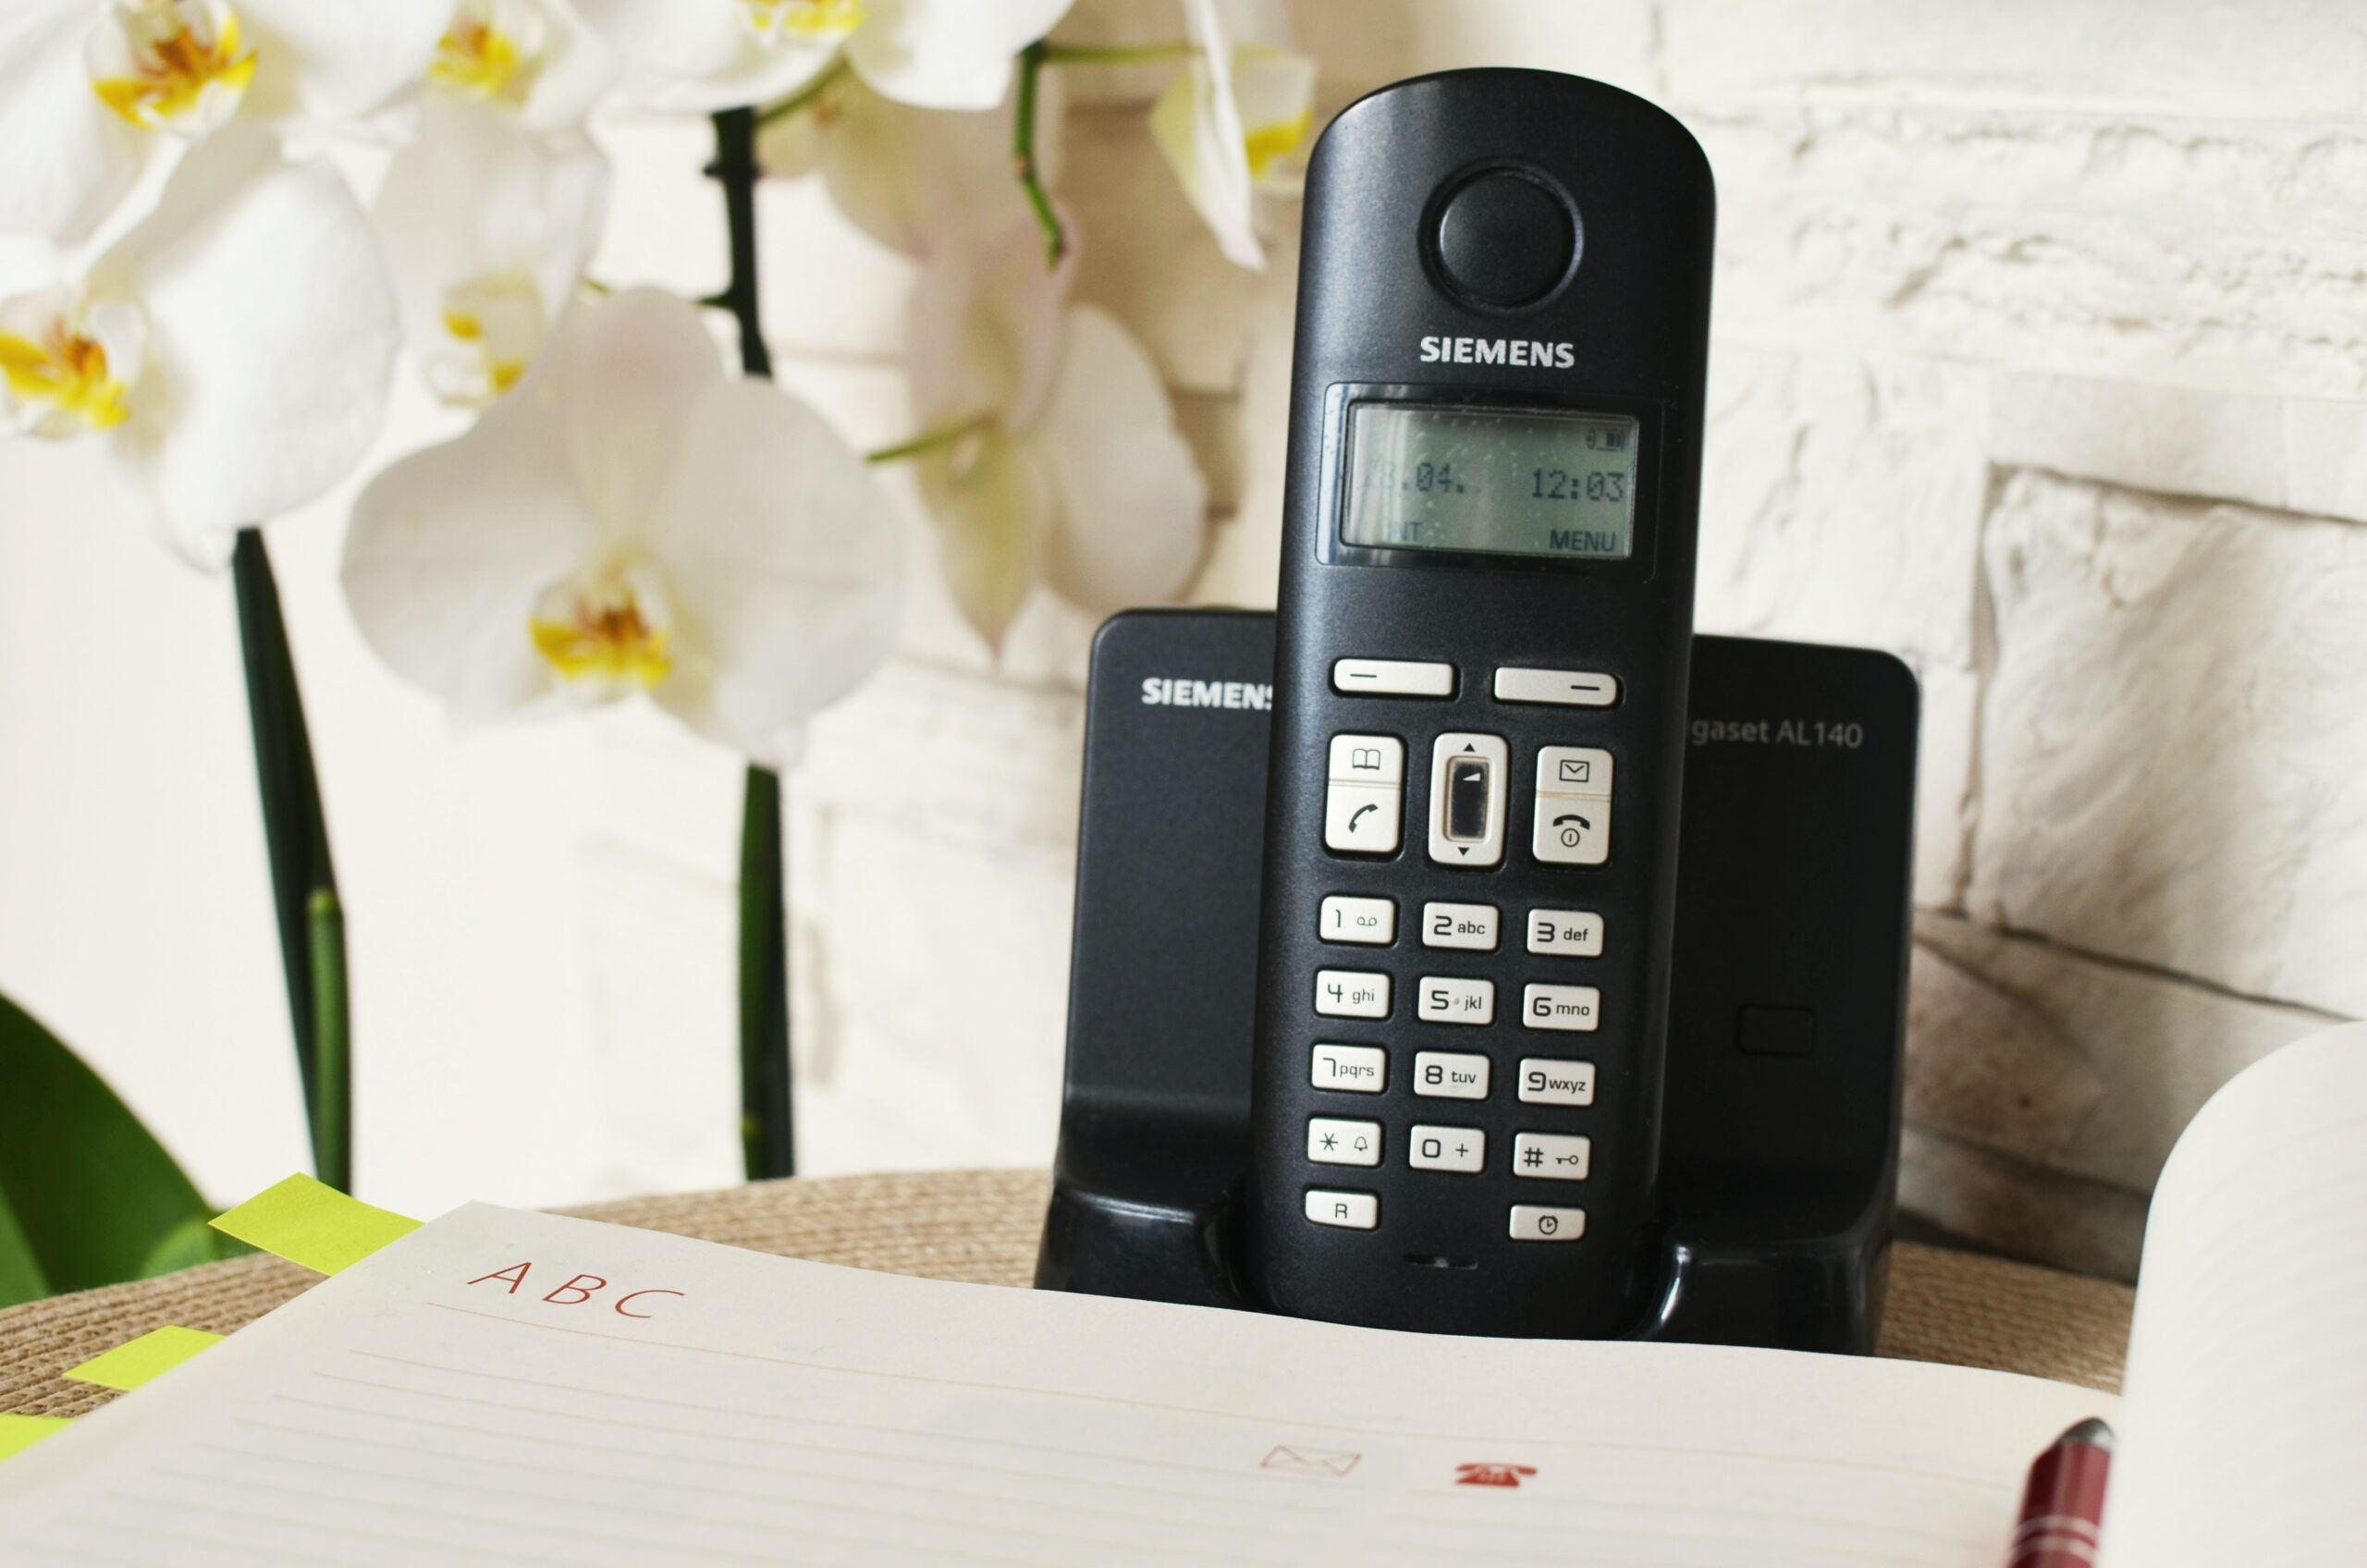 L'image représente un téléphone fonctionnant à l'aide d'un abonnement orange, dont le propriétaire a reçu des spams.